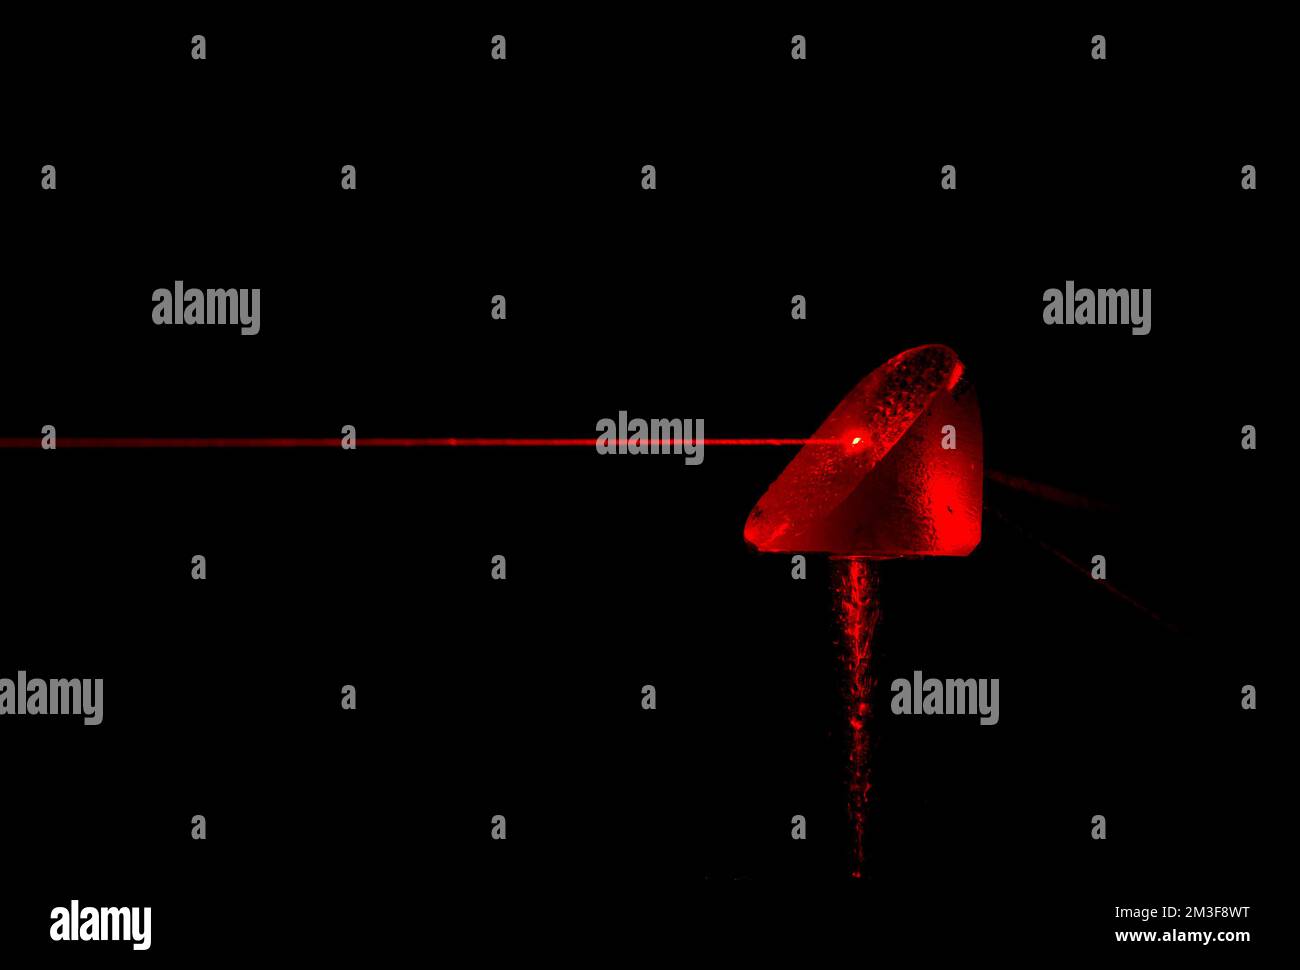 Ein roter Laserstrahl trifft auf ein Prisma. Der Strahl wurde durch einen feinen Wasserstrahl sichtbar gemacht. Wassertropfen auf dem Prisma und Wasserstreifen im Strahl. Stockfoto